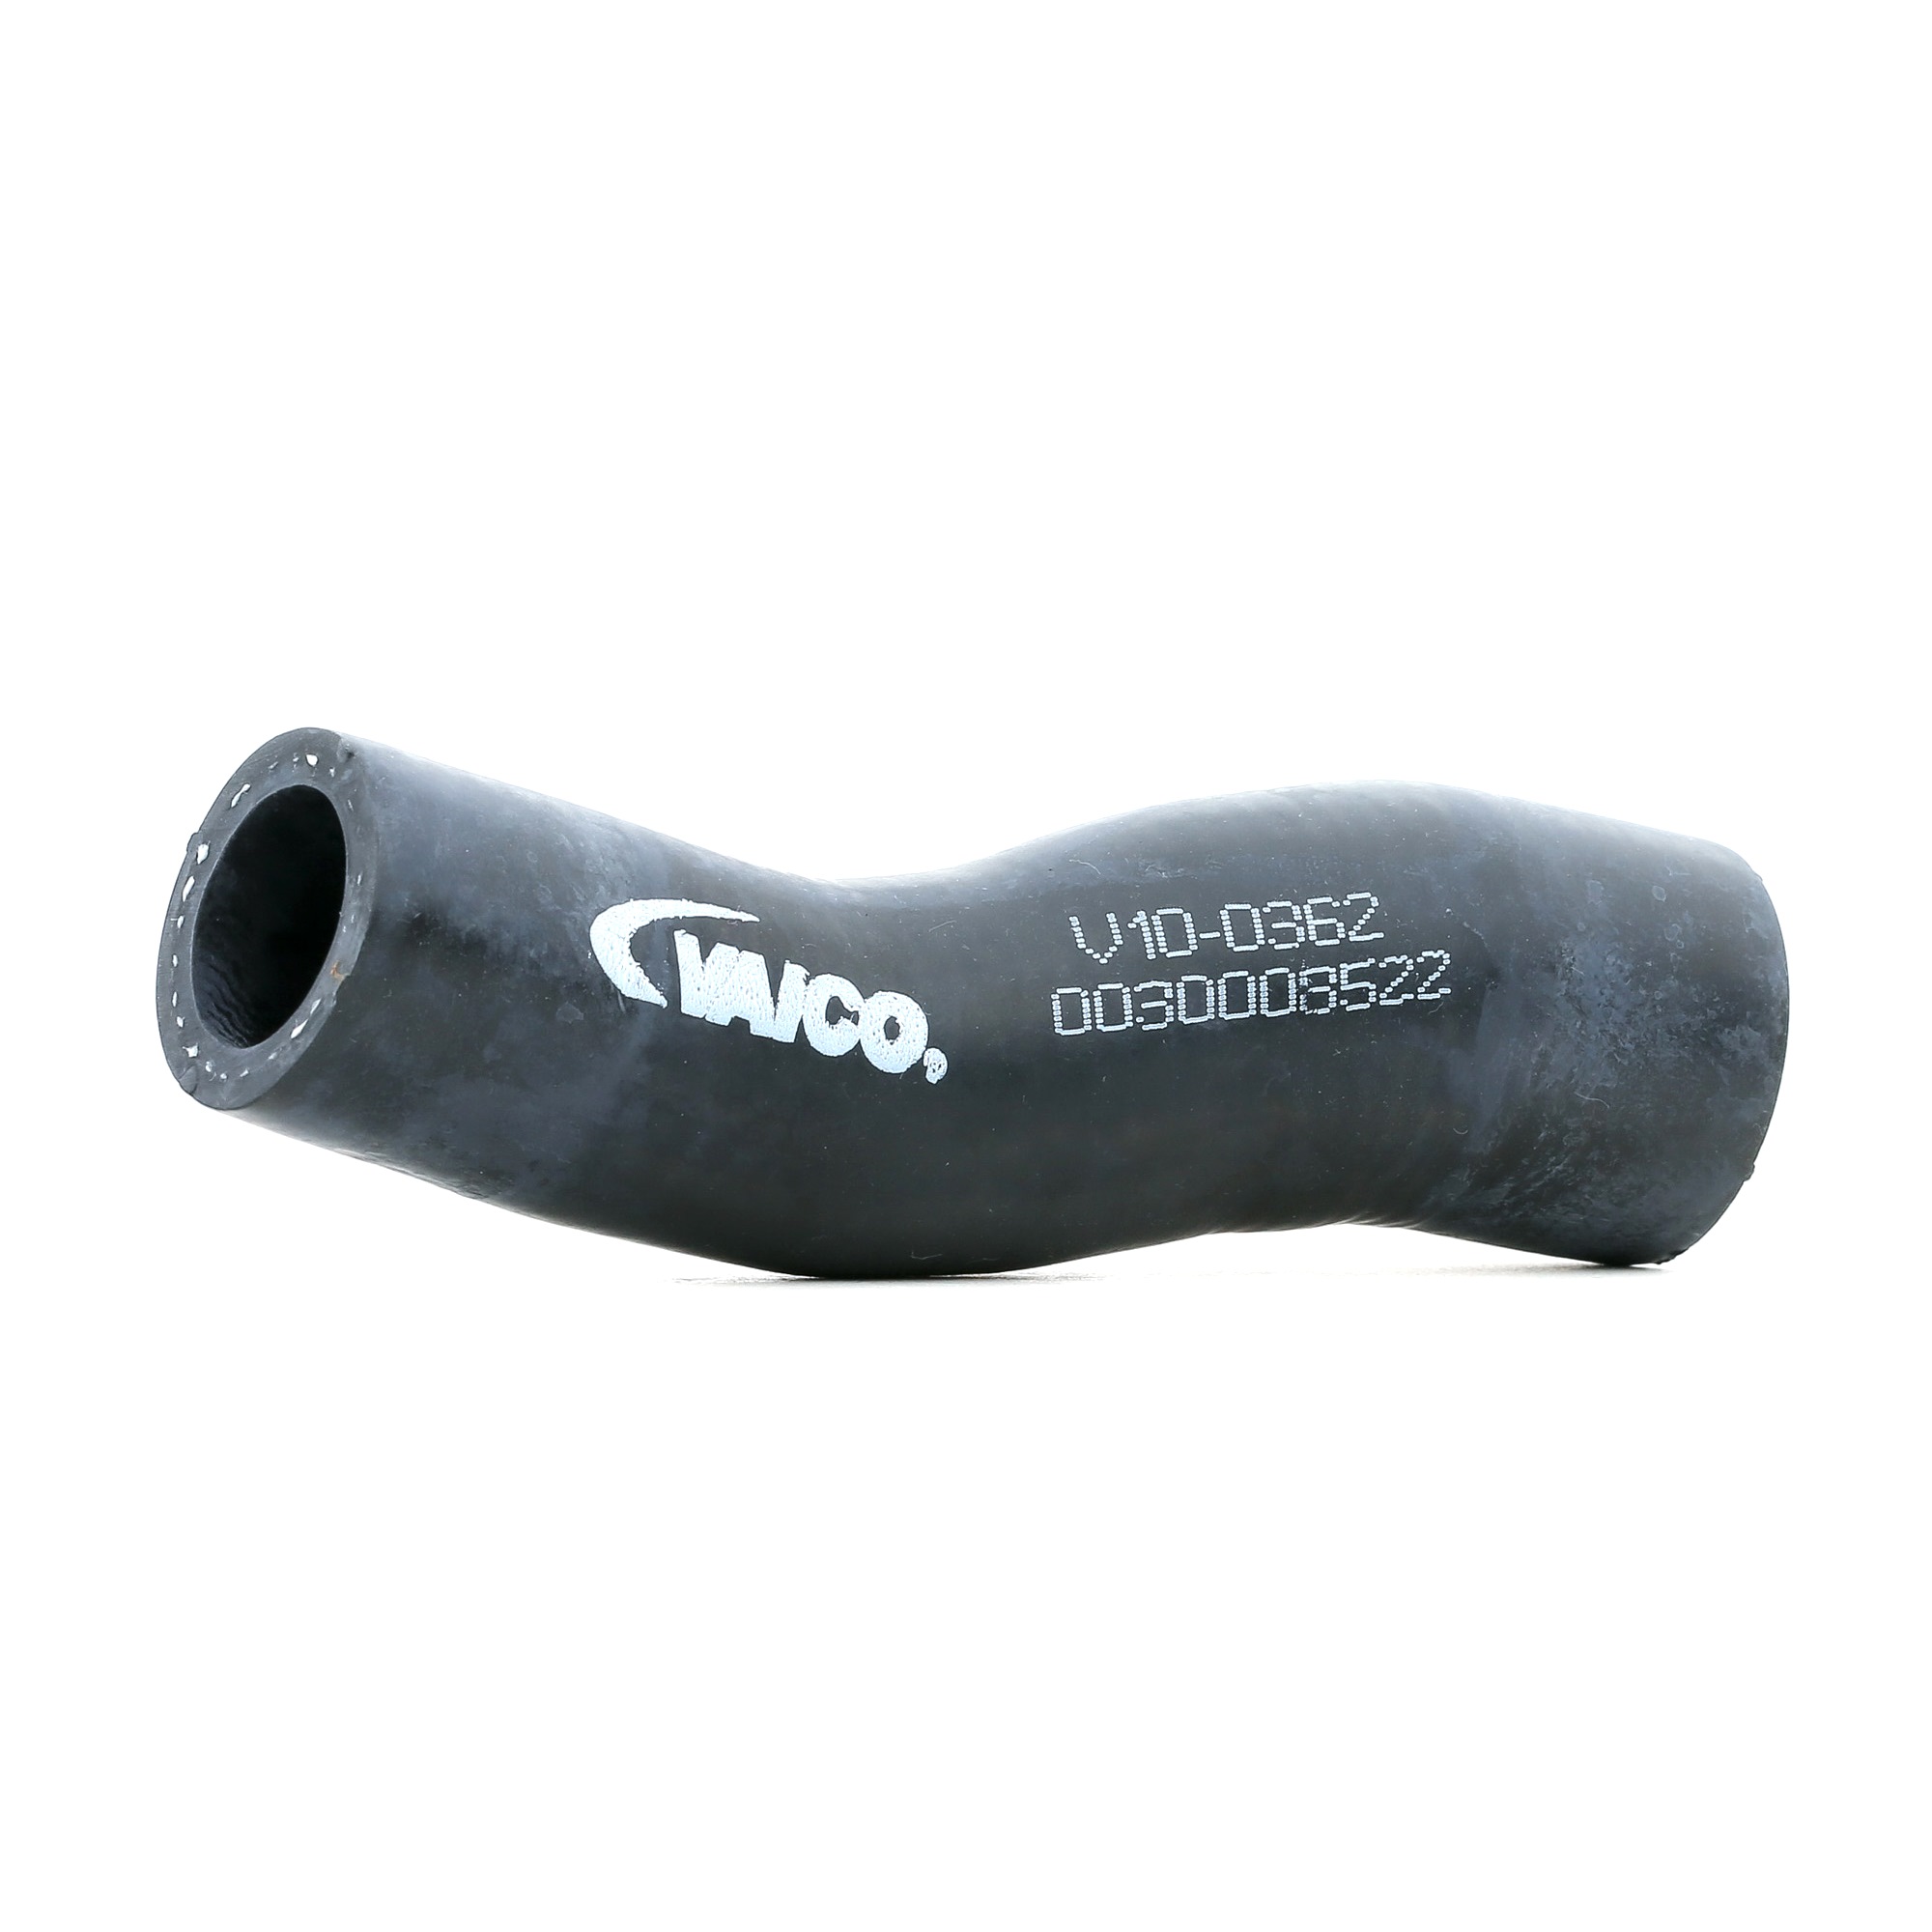 VAICO Q+, original equipment manufacturer quality Coolant Hose V10-0362 buy